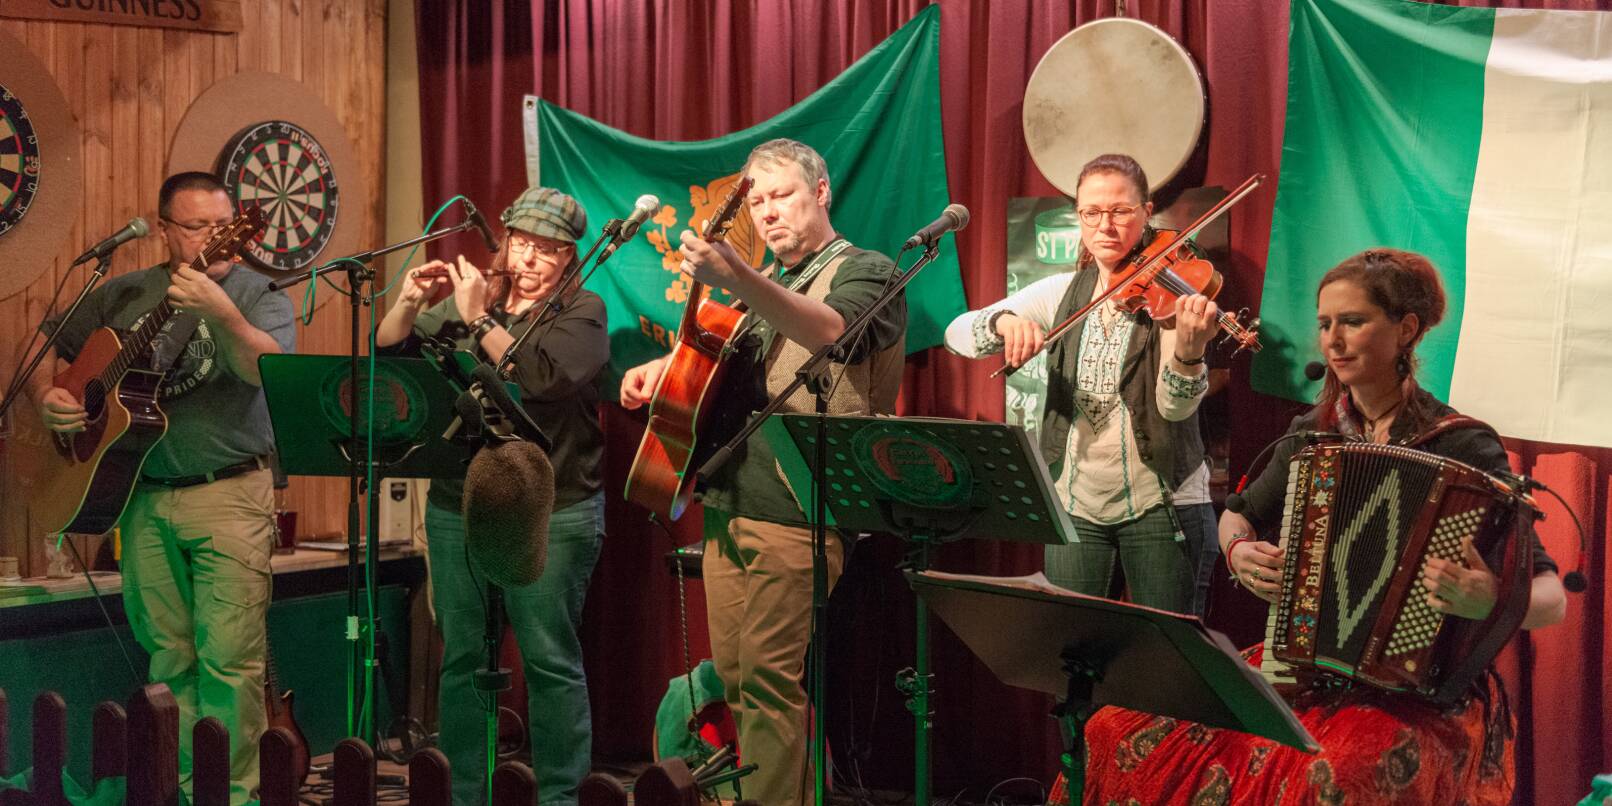 Unser Archivbild zeigt die Band "Celtic Friends" bei einem Auftritt im Irish Pub Mac Menhir aus dem Jahr 2020. Auch die Musiker beteiligen sich an dem Rahmenprogramm der Registrierungsaktion.